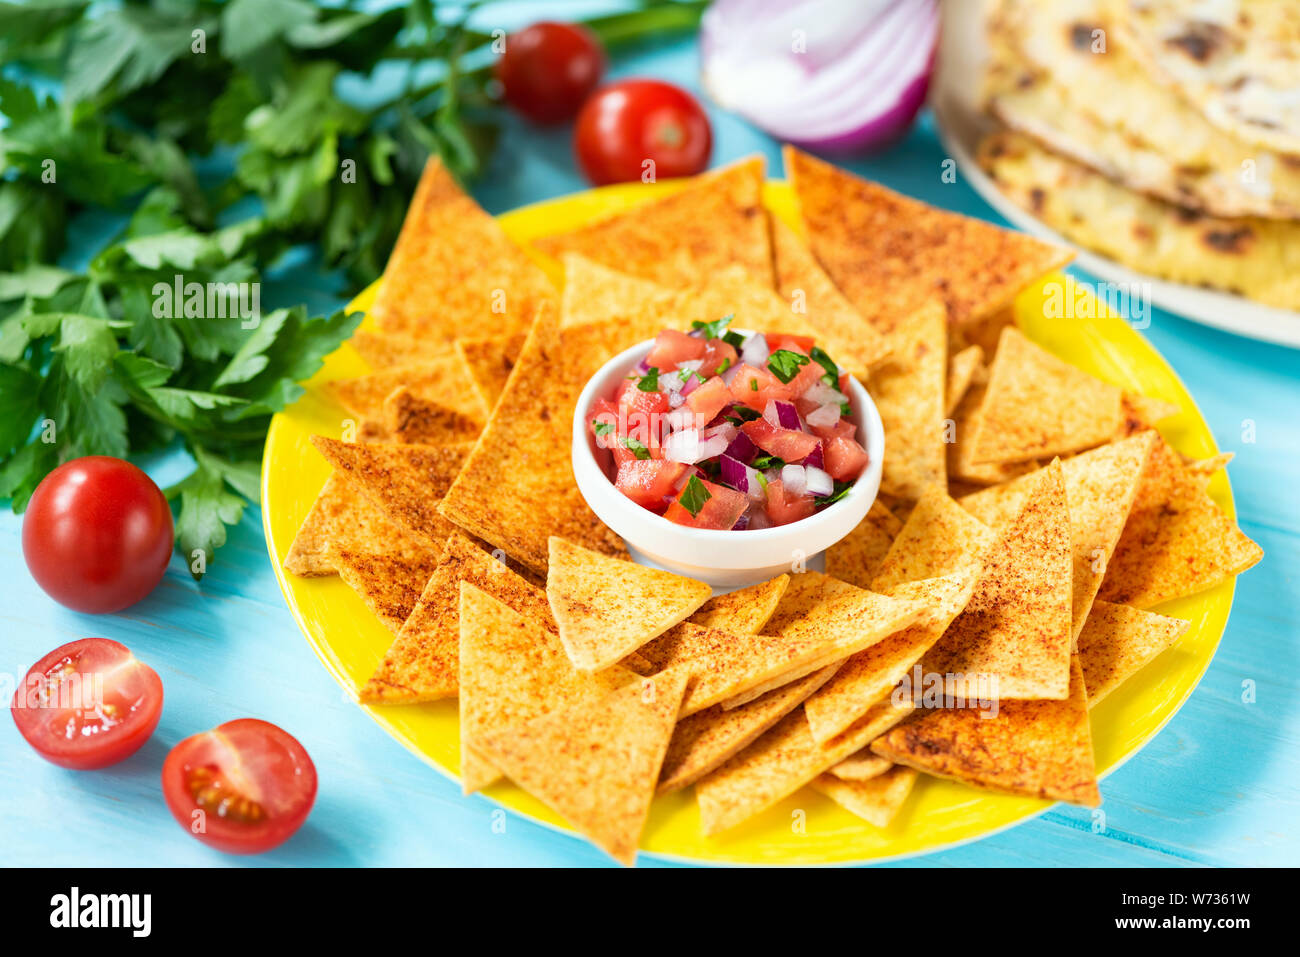 Croustilles de maïs Nachos avec paprika et salsa de tomates sur la plaque, sur fond bleu. Cuisine mexicaine traditionnelle Tex Mex Banque D'Images